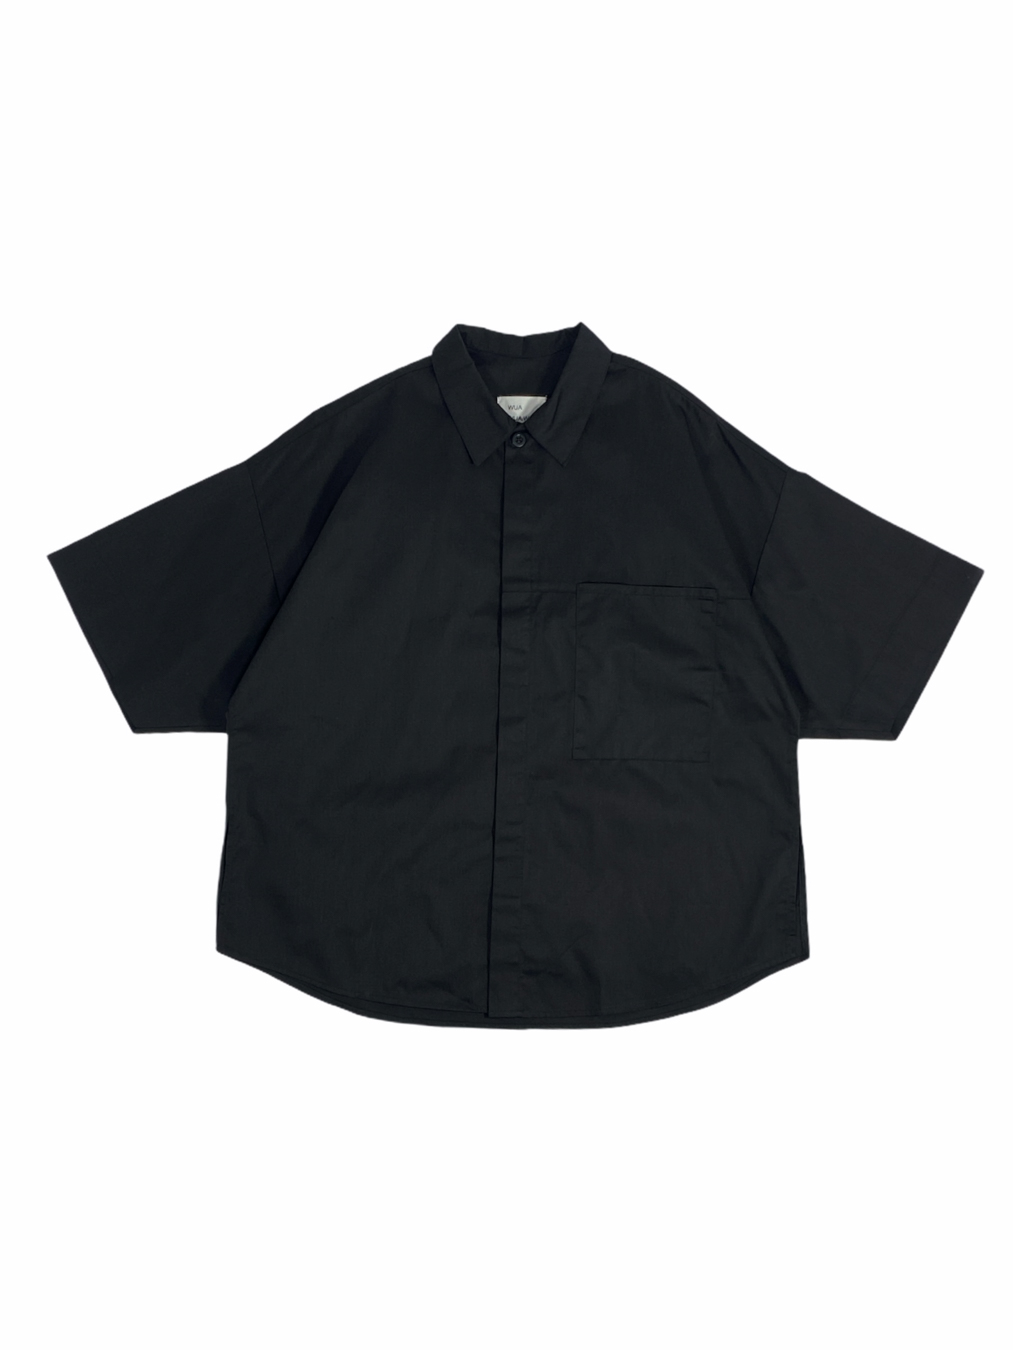 Kurono Cotton Shirt (Black)